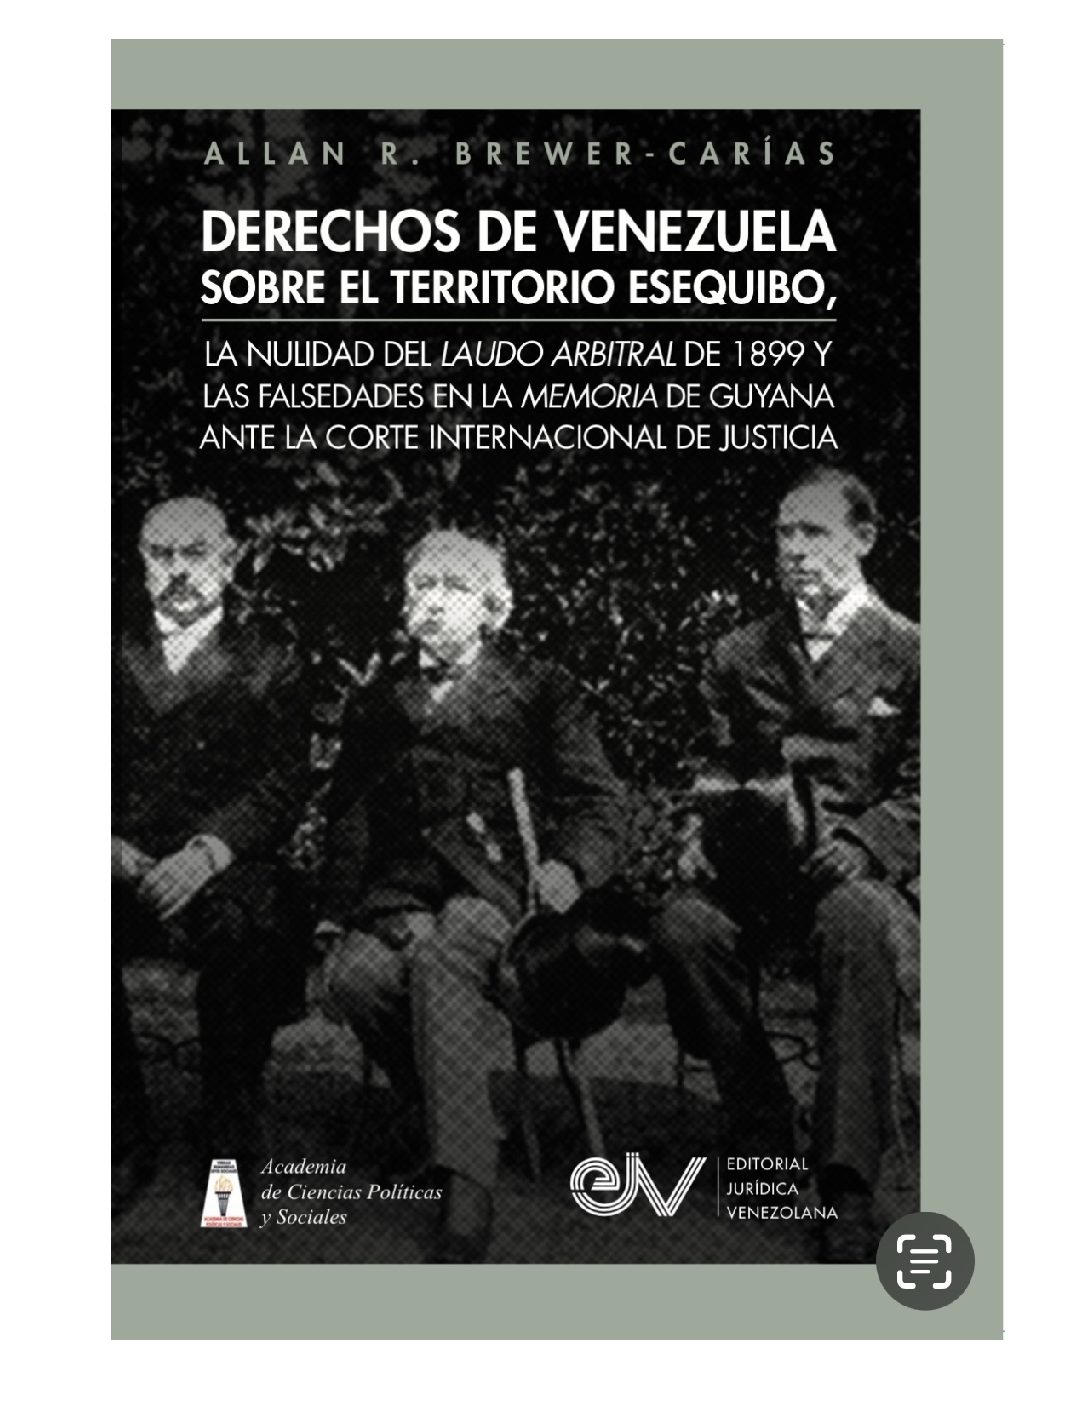 Derechos de Venezuela sobre el Territorio Esequibo, la nulidad del laudo arbitral de 1899 y las falsedades en la memoria de Guyana ante la Corte Internacional de Justicia. Autor: Allan R. Brewer-Carías